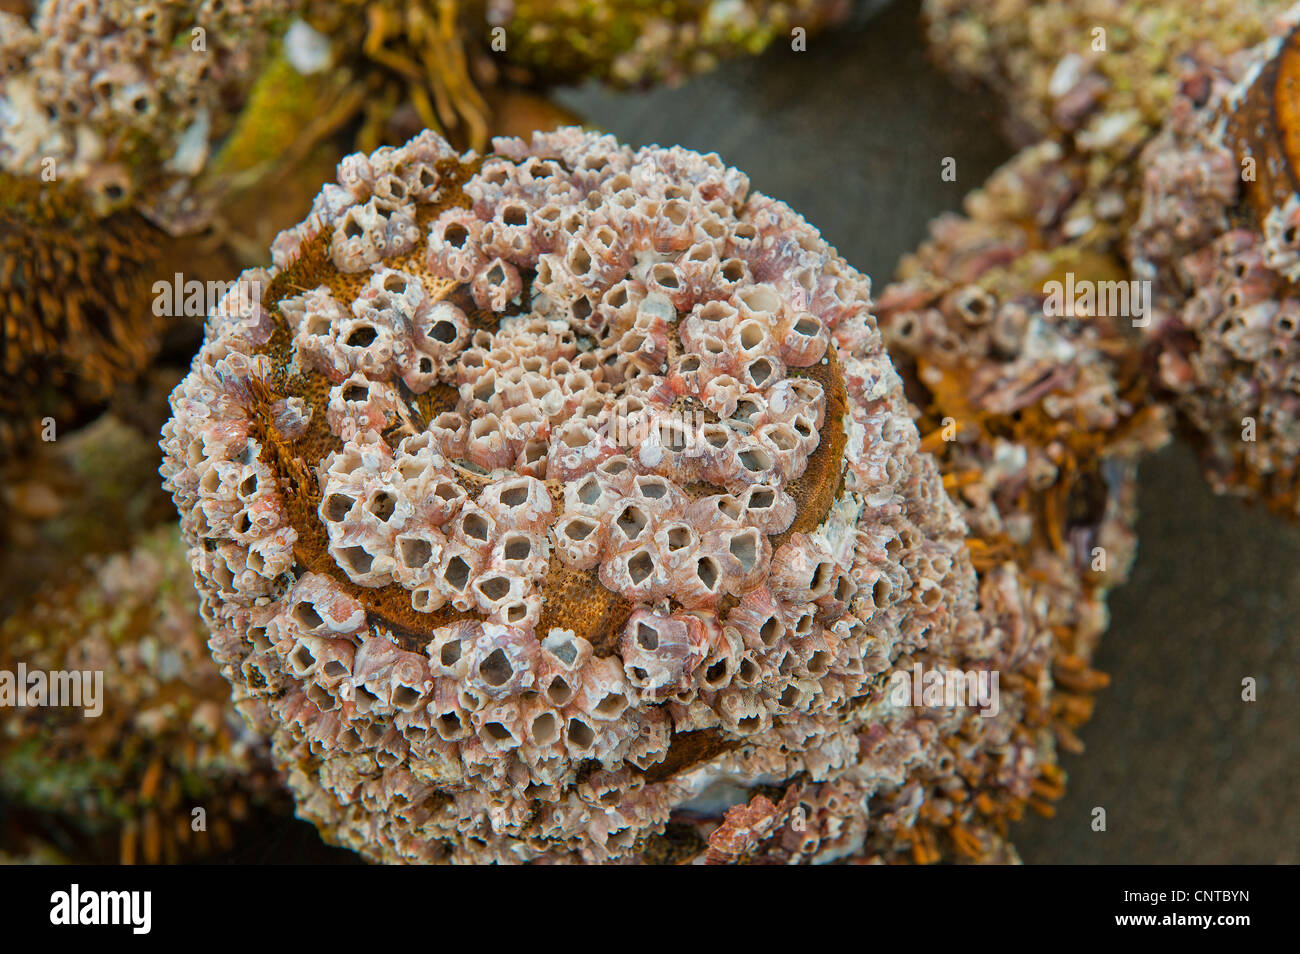 Seapox Meer Pocken BARNACLE Krustentier Balanidae sitzen auf einem hölzernen Zweig Stockfoto